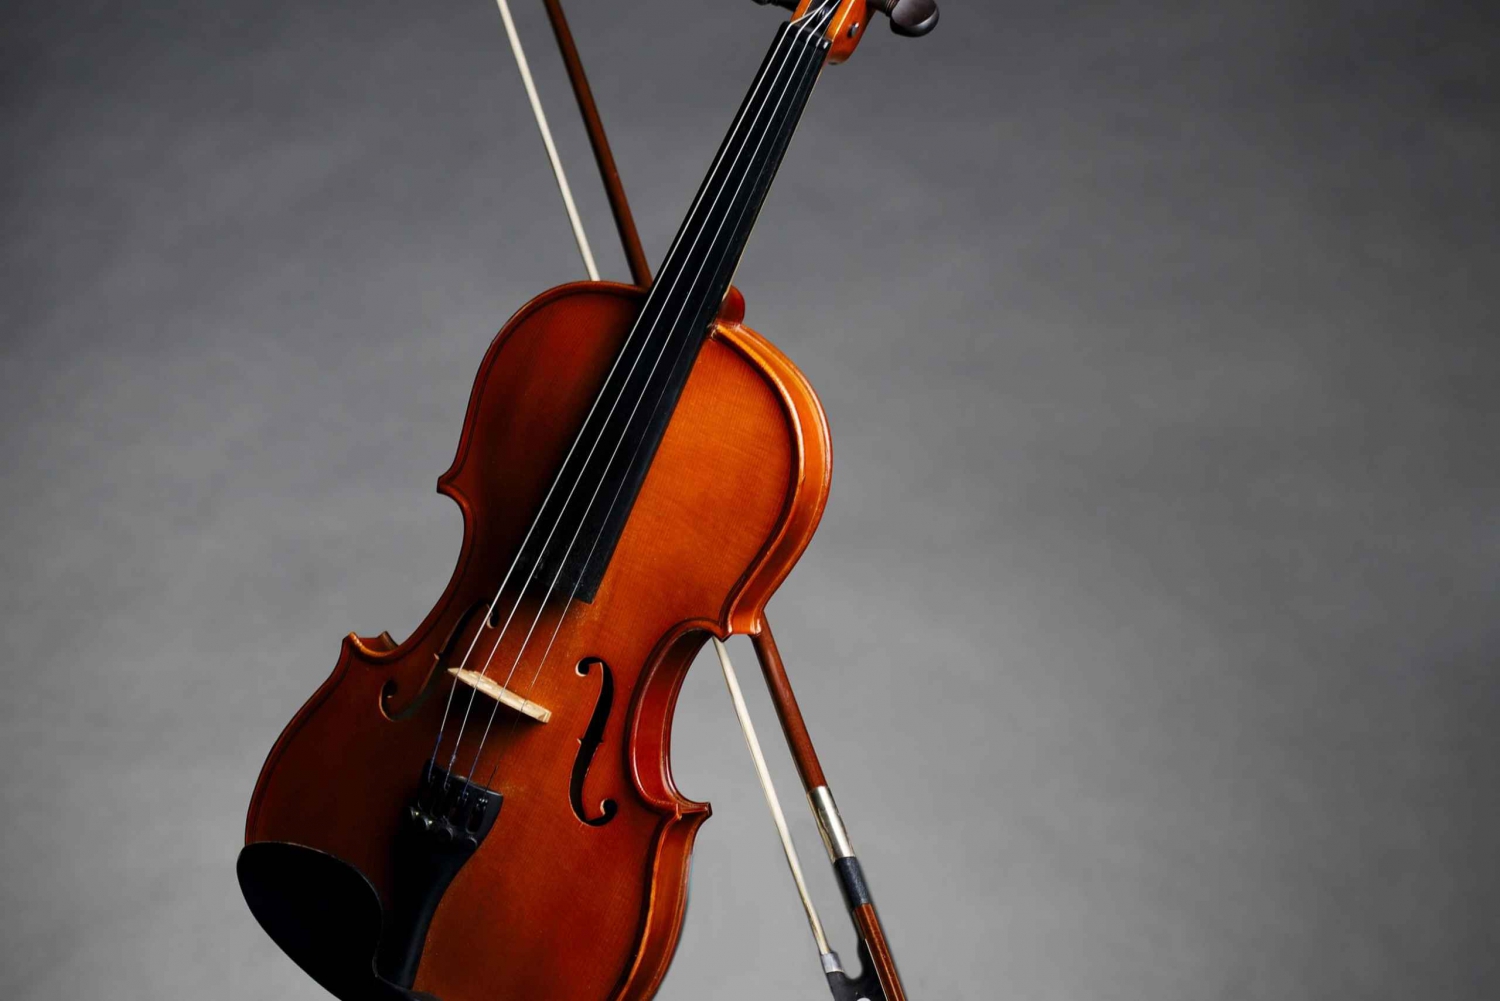 L'après-midi, accès à la galerie Accademia : David et Stradivarius